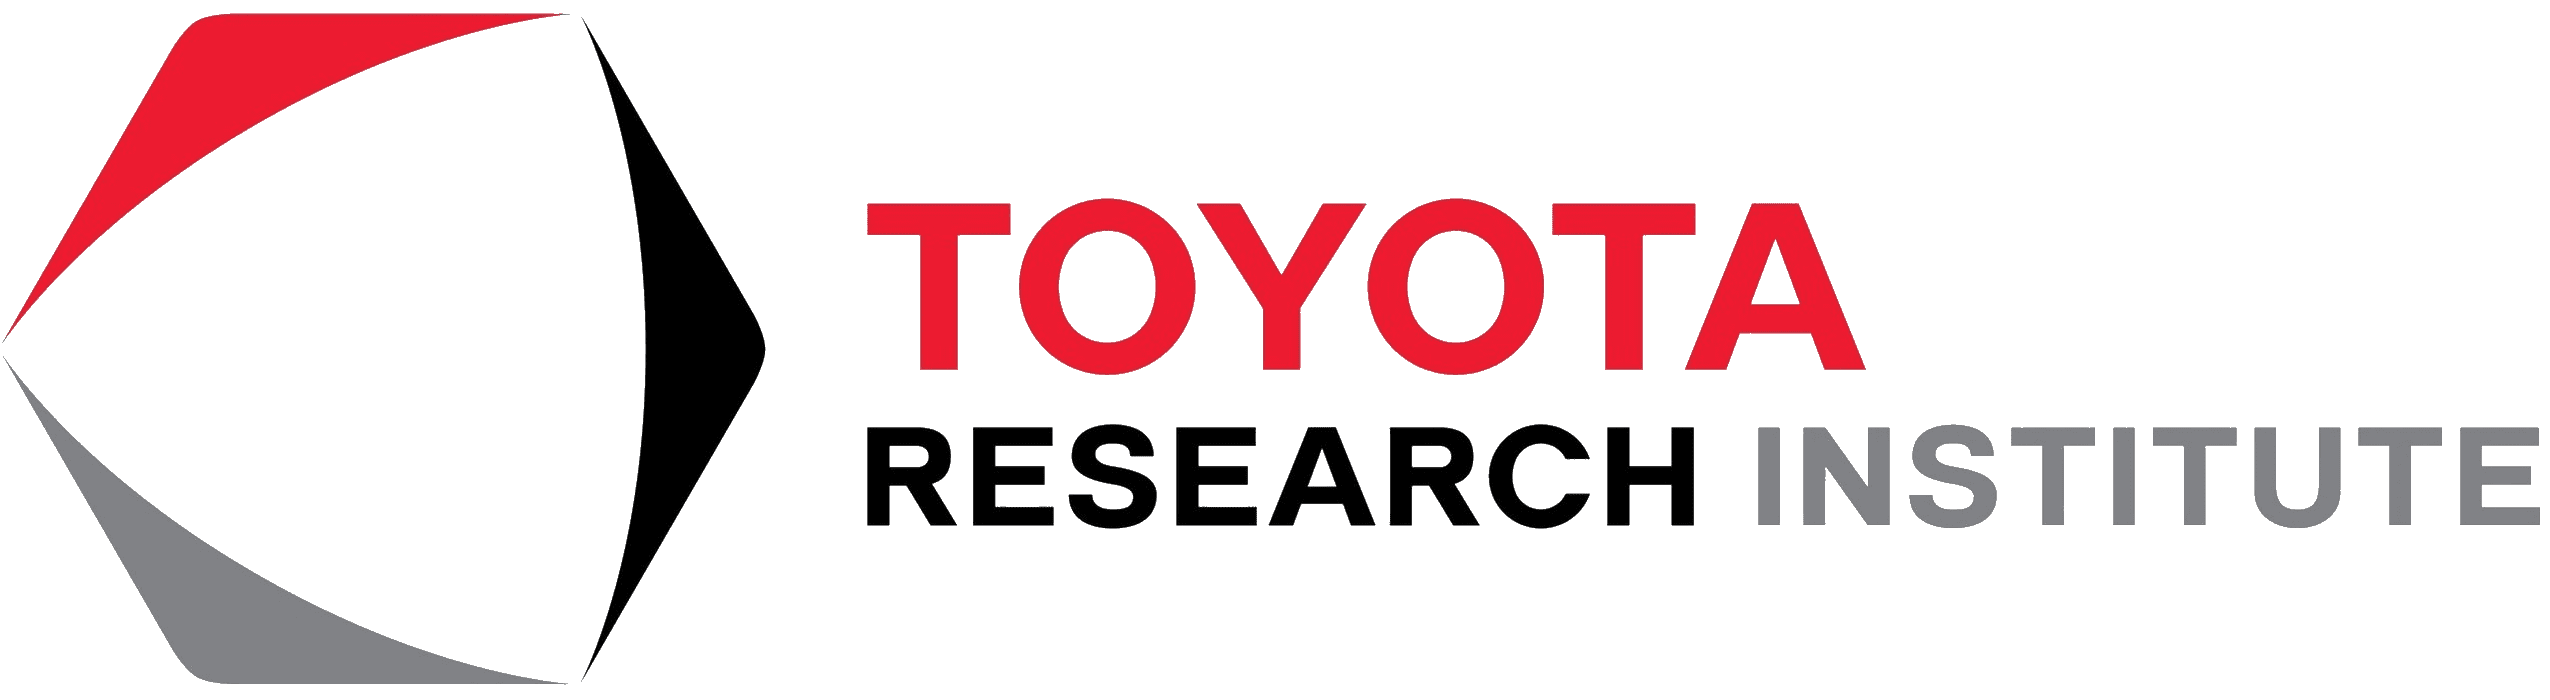 Toyota Research Institute Logo